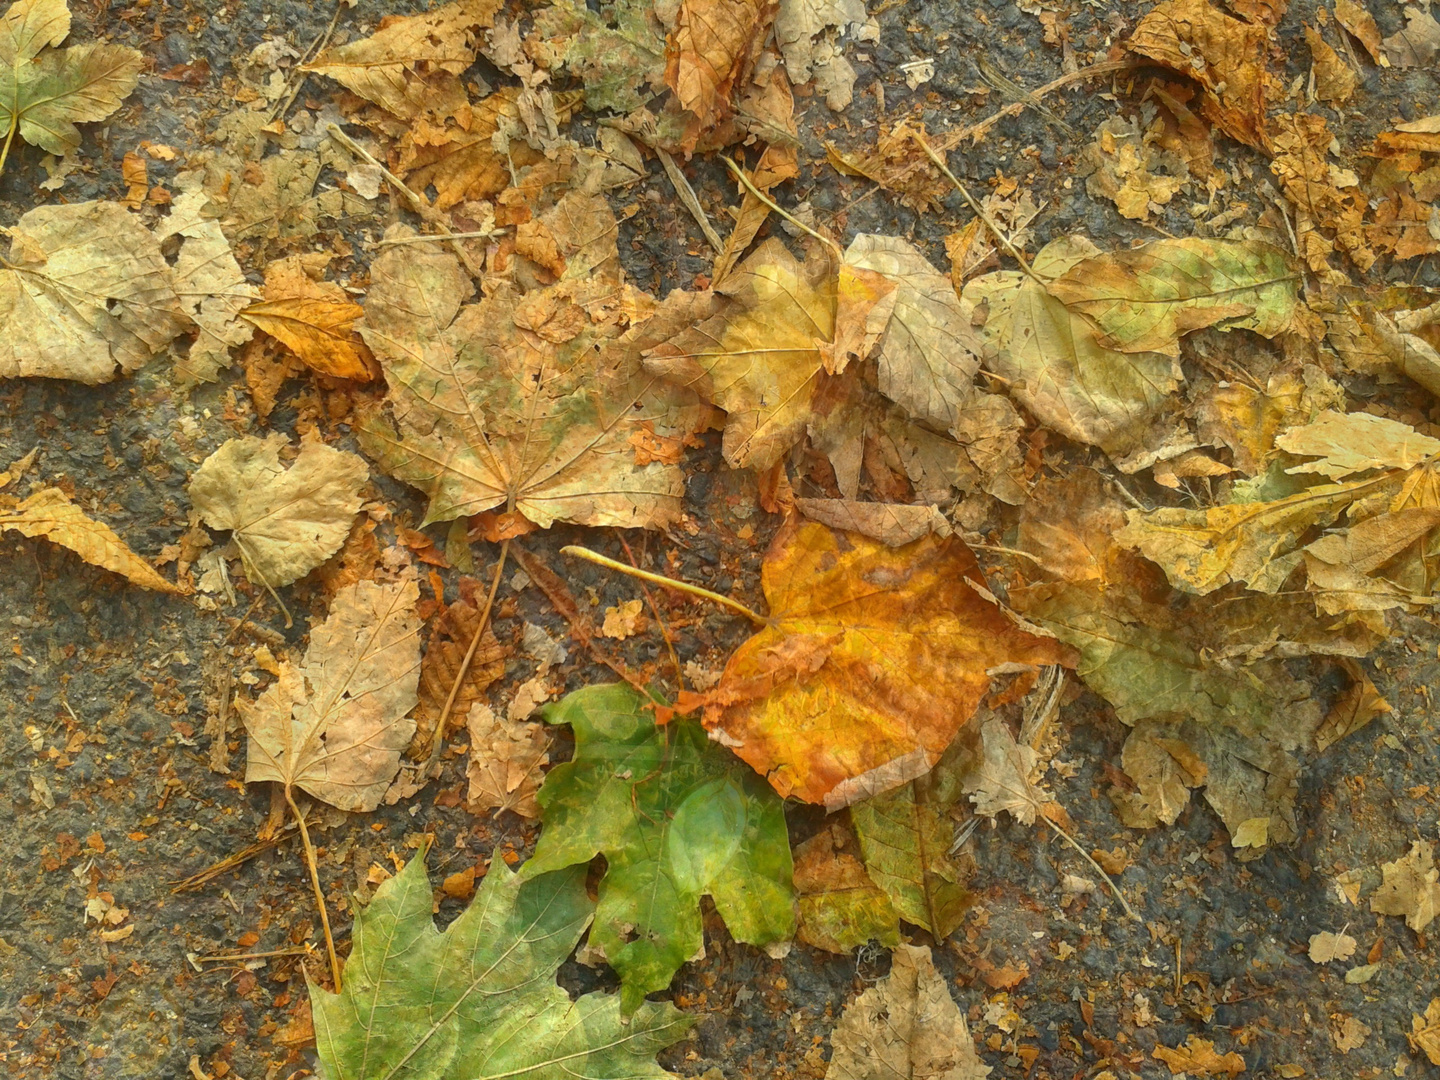 Herbstbild